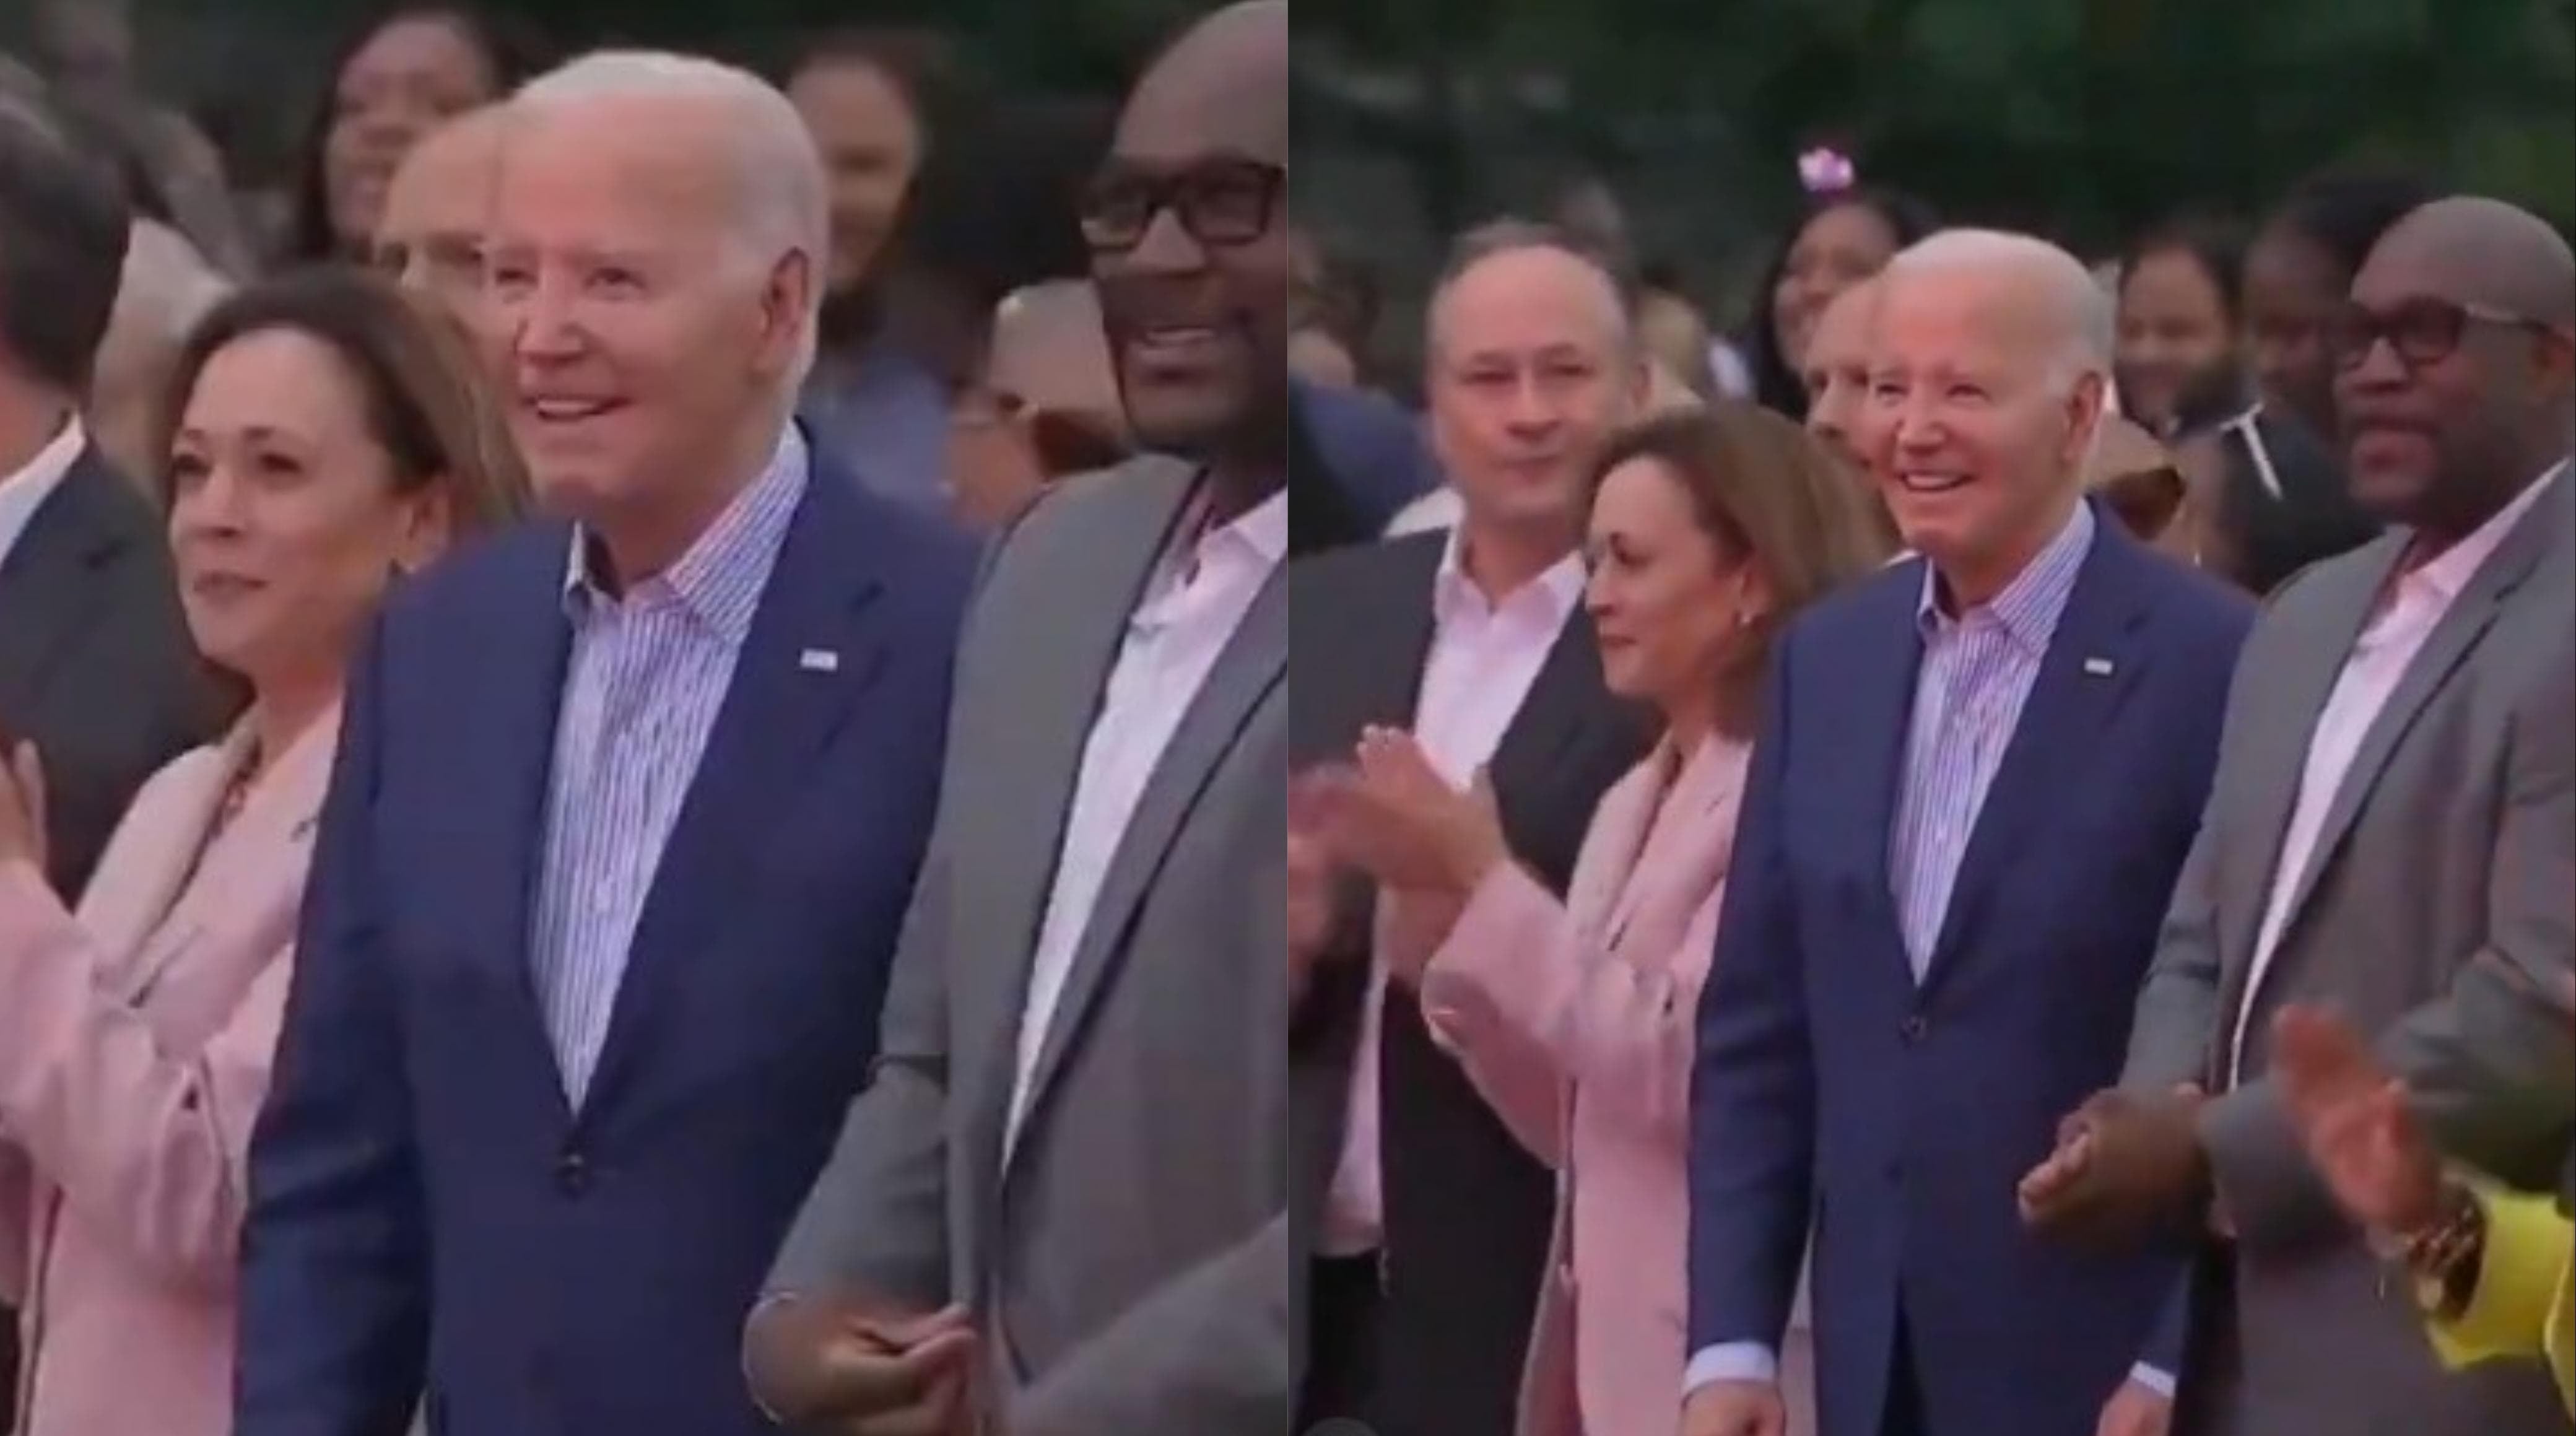 El video viral de Joe Biden quieto, desata los mejores comentarios